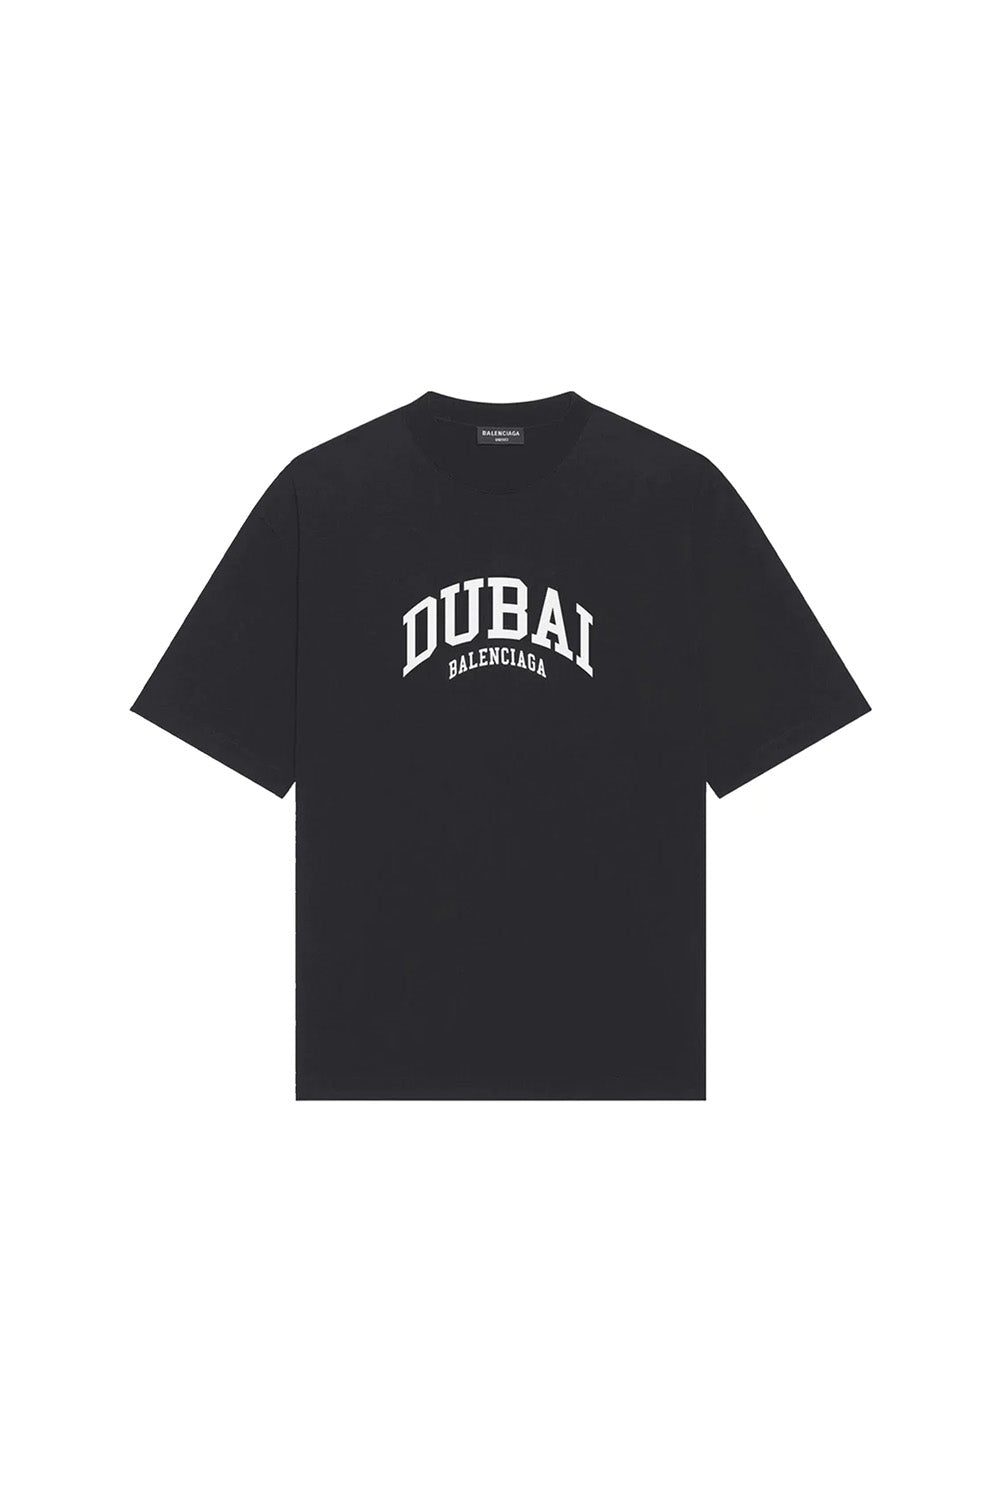 Balenciaga Dubai Print T-Shirt In Black